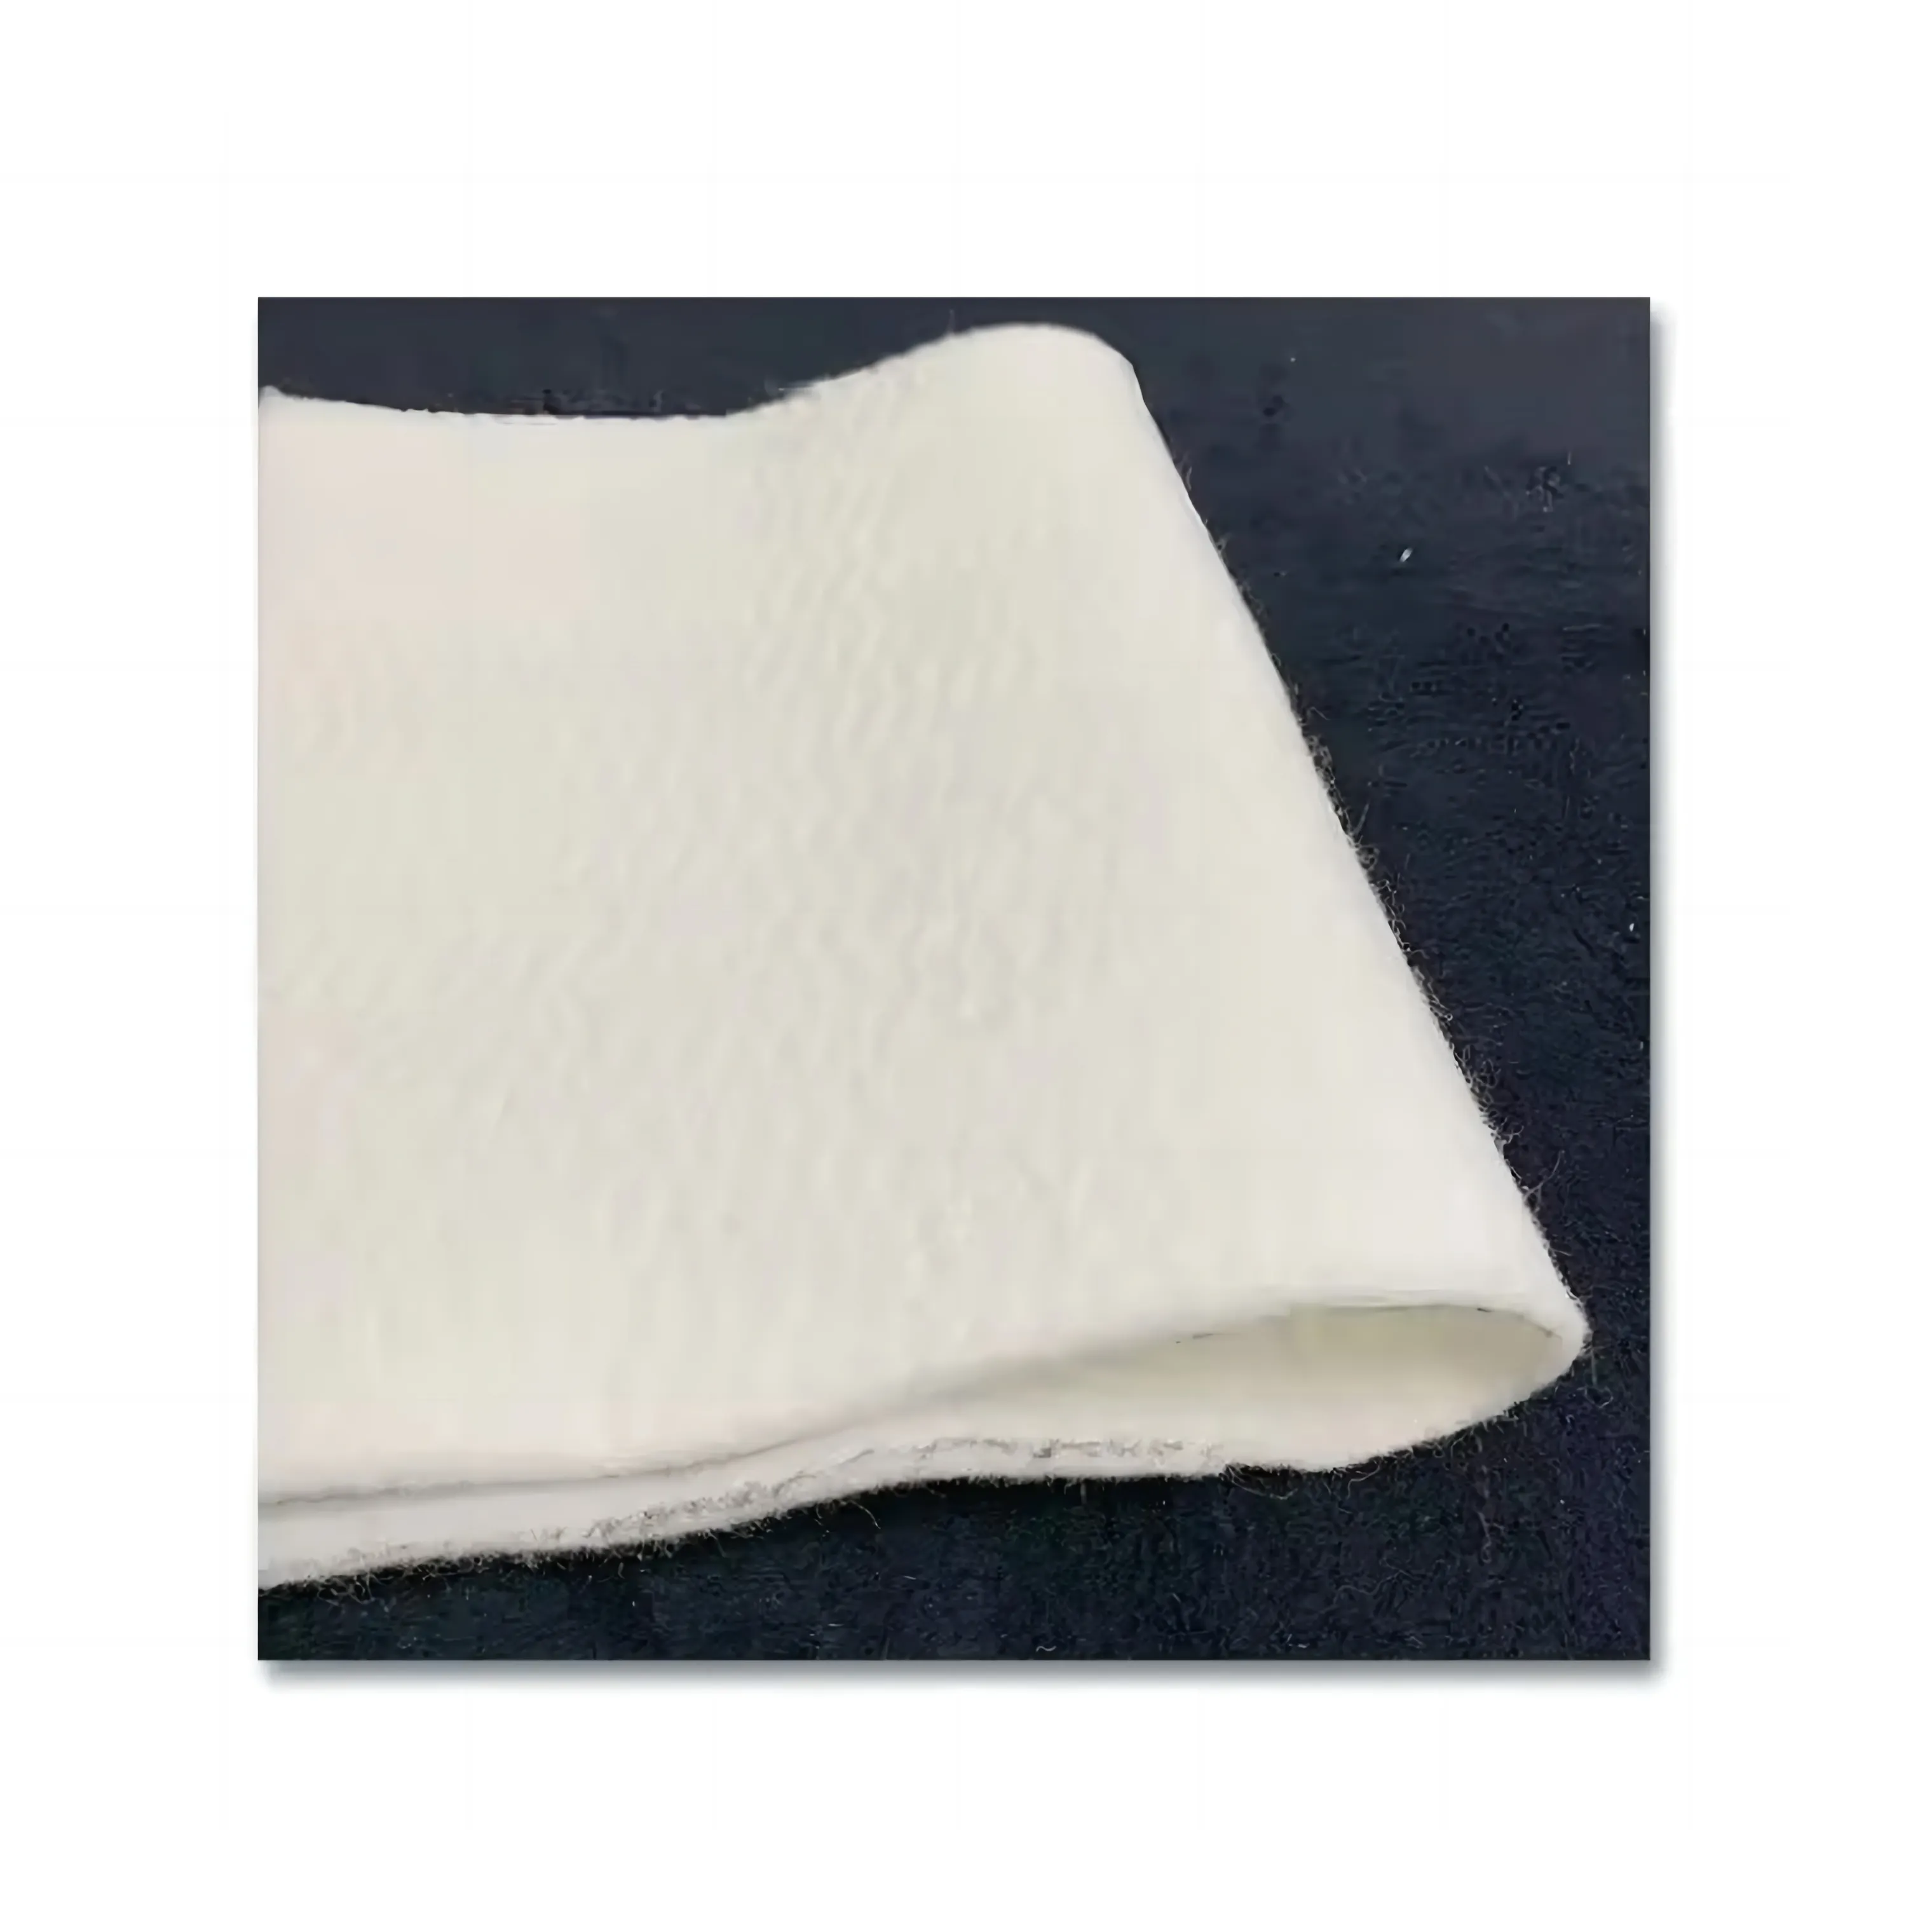 Sıcak satış Polyester iğne yumruk keçe dokunmamış kumaş rulo yatak kuru temizleme basın pedleri için keçe